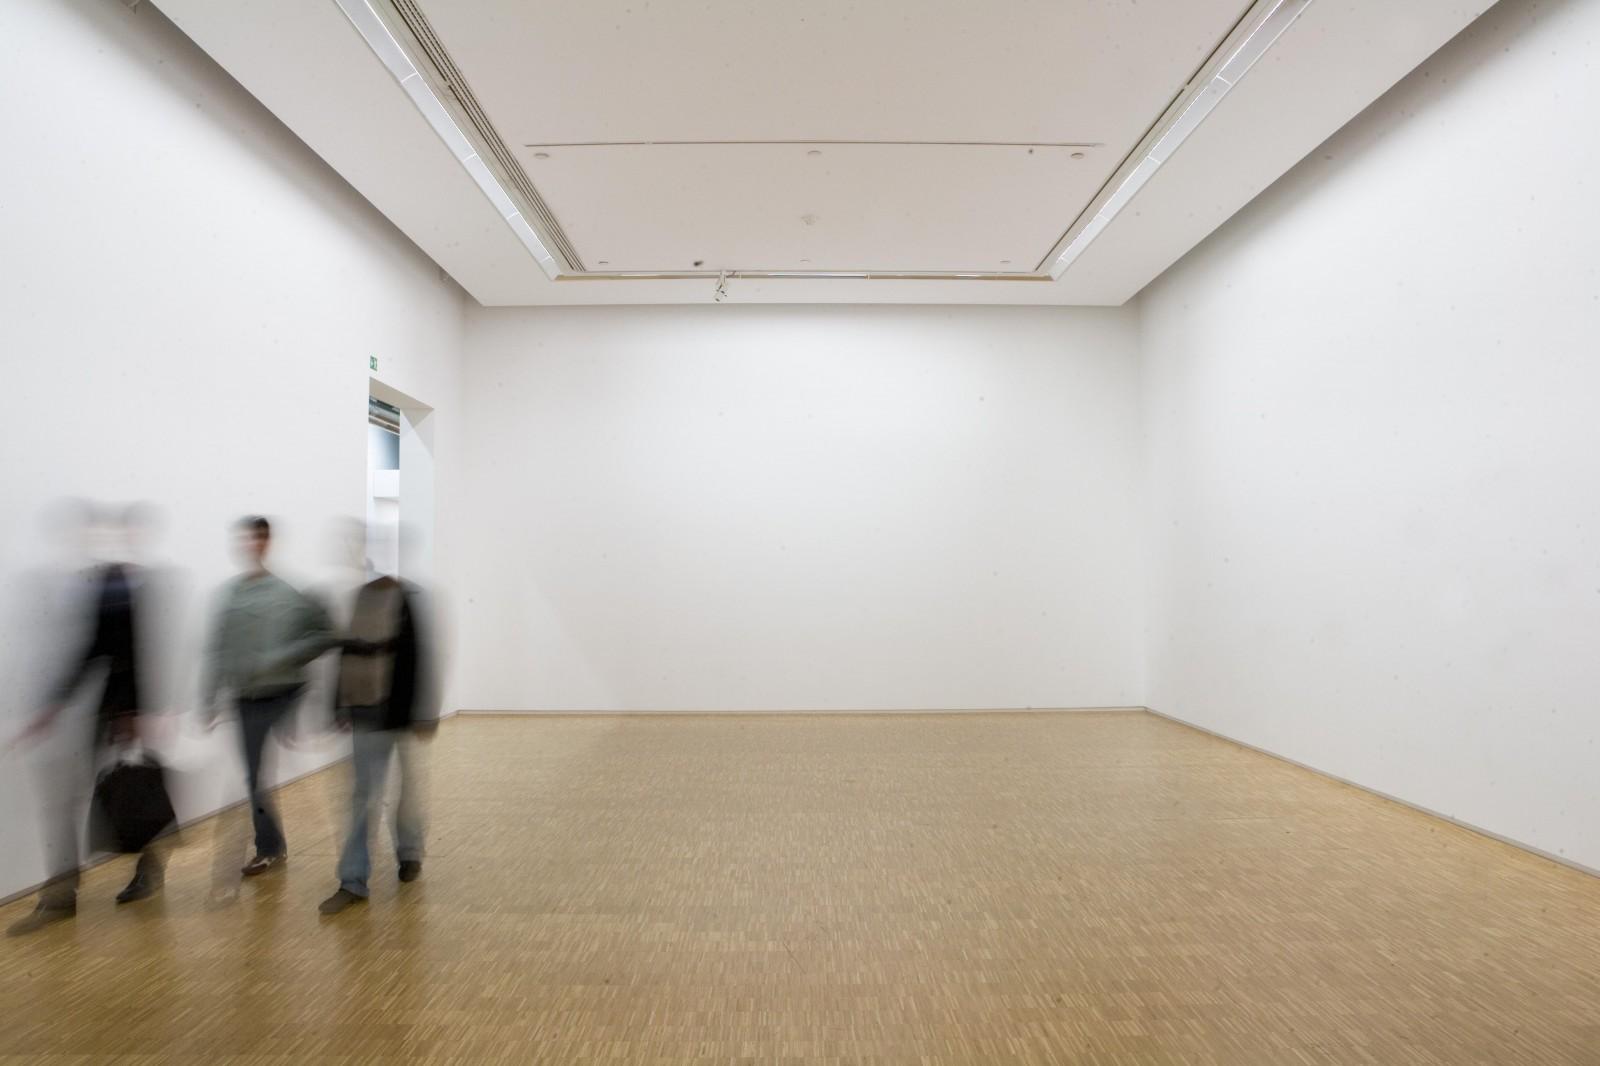 Yves Klein l'exposition, "Vides. Une rétrospective", Musée National d'Art Moderne, 2009